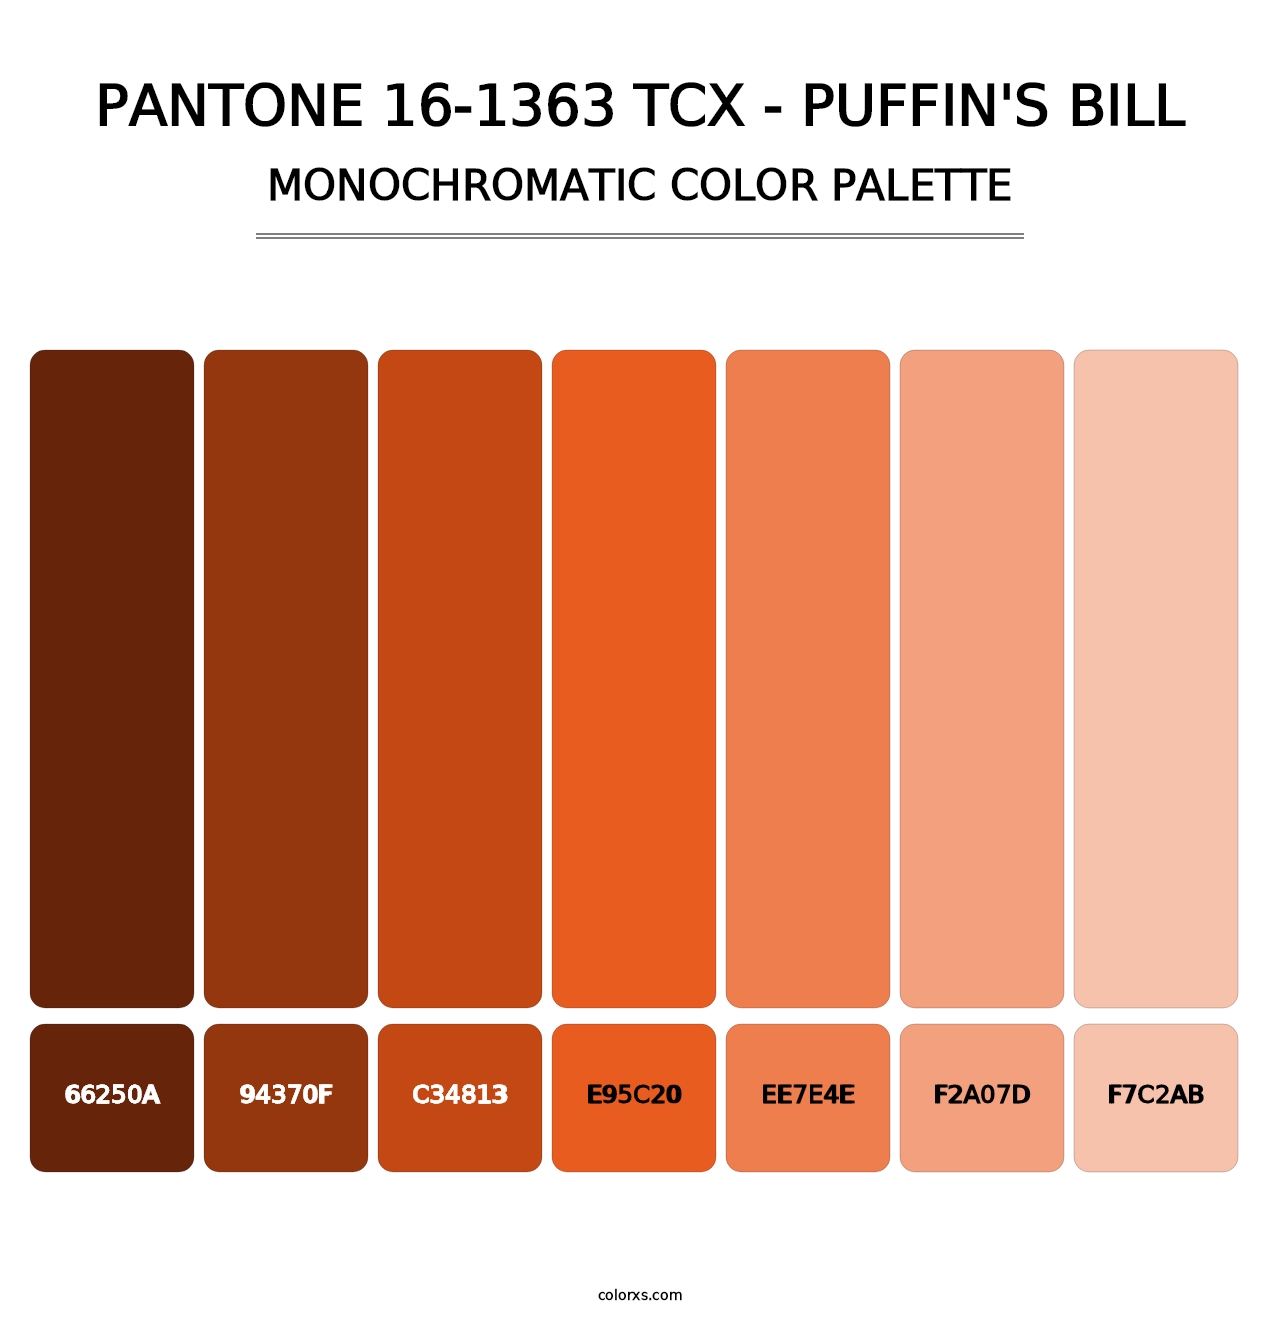 PANTONE 16-1363 TCX - Puffin's Bill - Monochromatic Color Palette